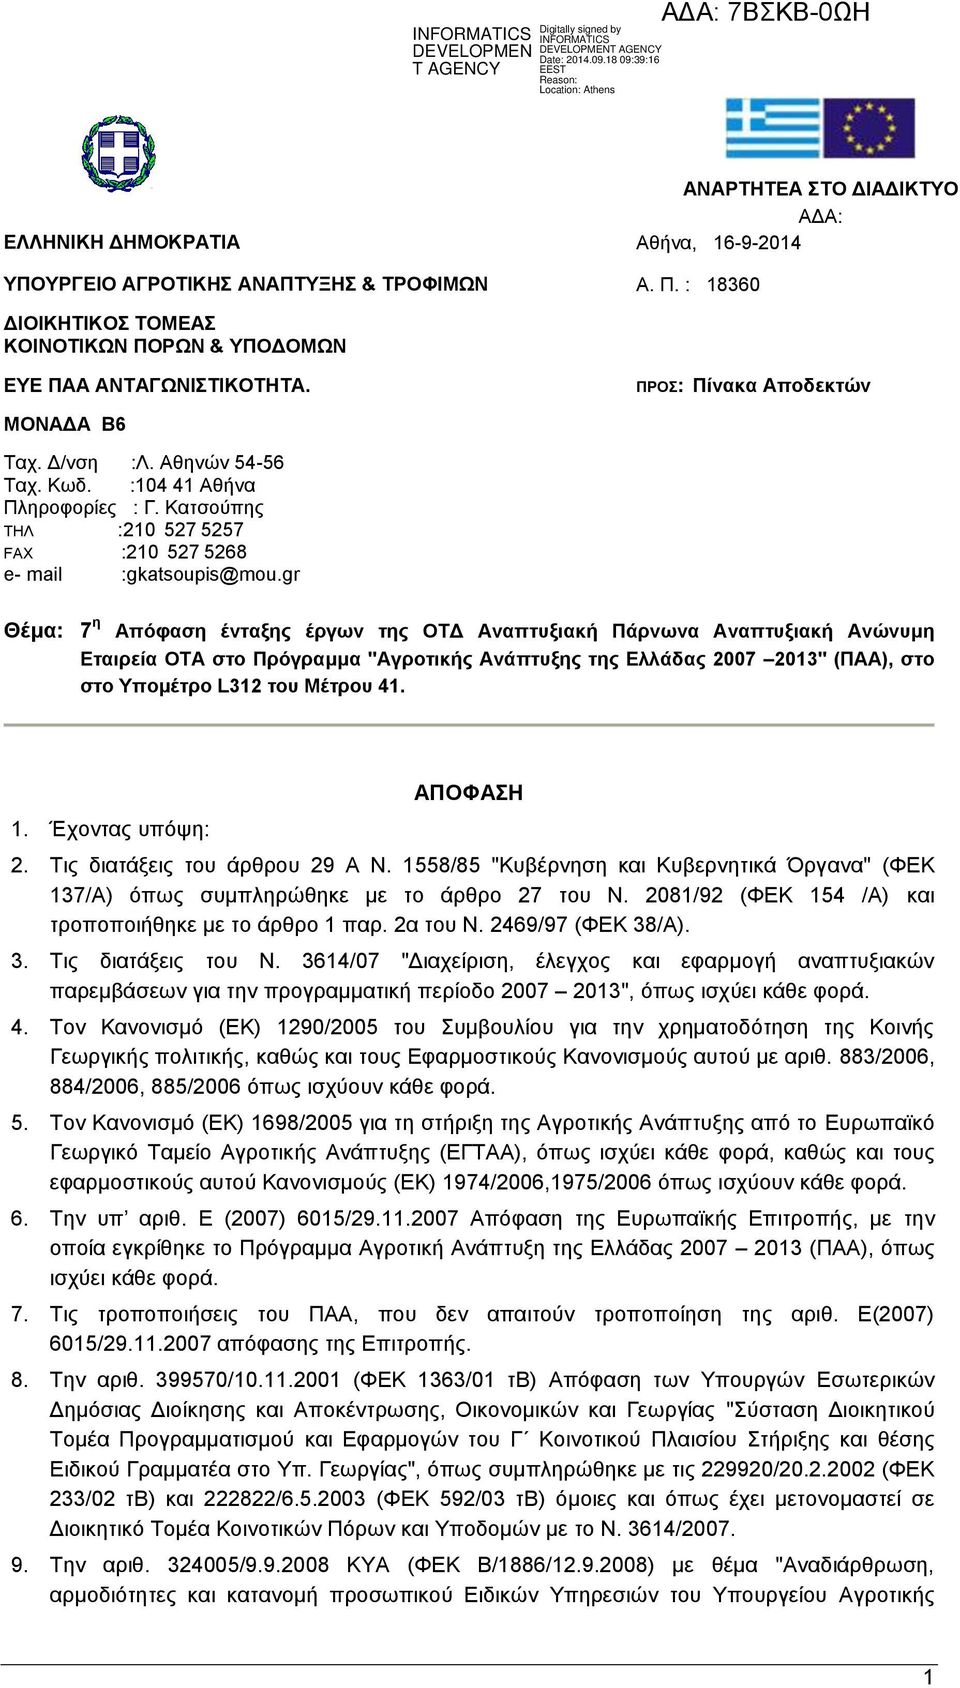 gr Θέμα: 7 η Απόφαση ένταξης έργων της ΟΤΔ Αναπτυξιακή Πάρνωνα Αναπτυξιακή Ανώνυμη Εταιρεία ΟΤΑ στο Πρόγραμμα "Αγροτικής Ανάπτυξης της Ελλάδας 2007 2013" (ΠΑΑ), στο στο Υπομέτρο L312 του Μέτρου 41. 1.